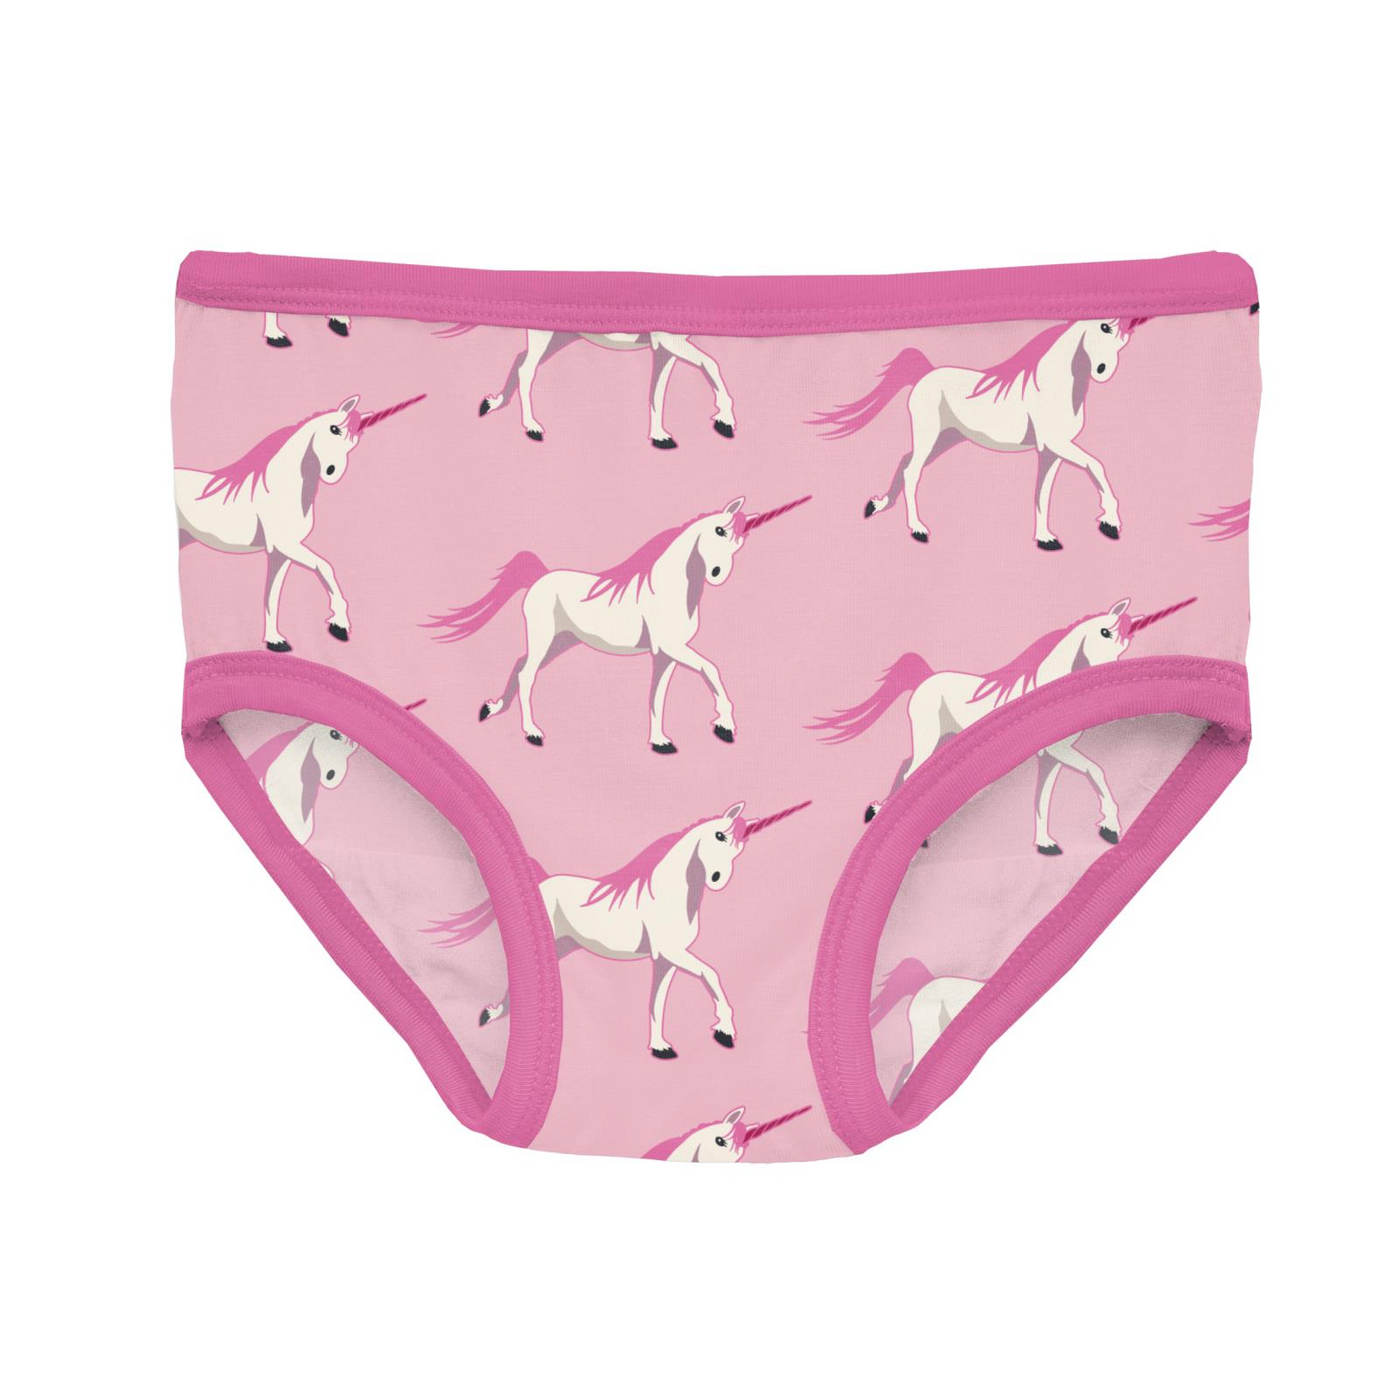 Kickee Pants Girl's Underwear: Cake Pop Prancing Unicorn – Bellies